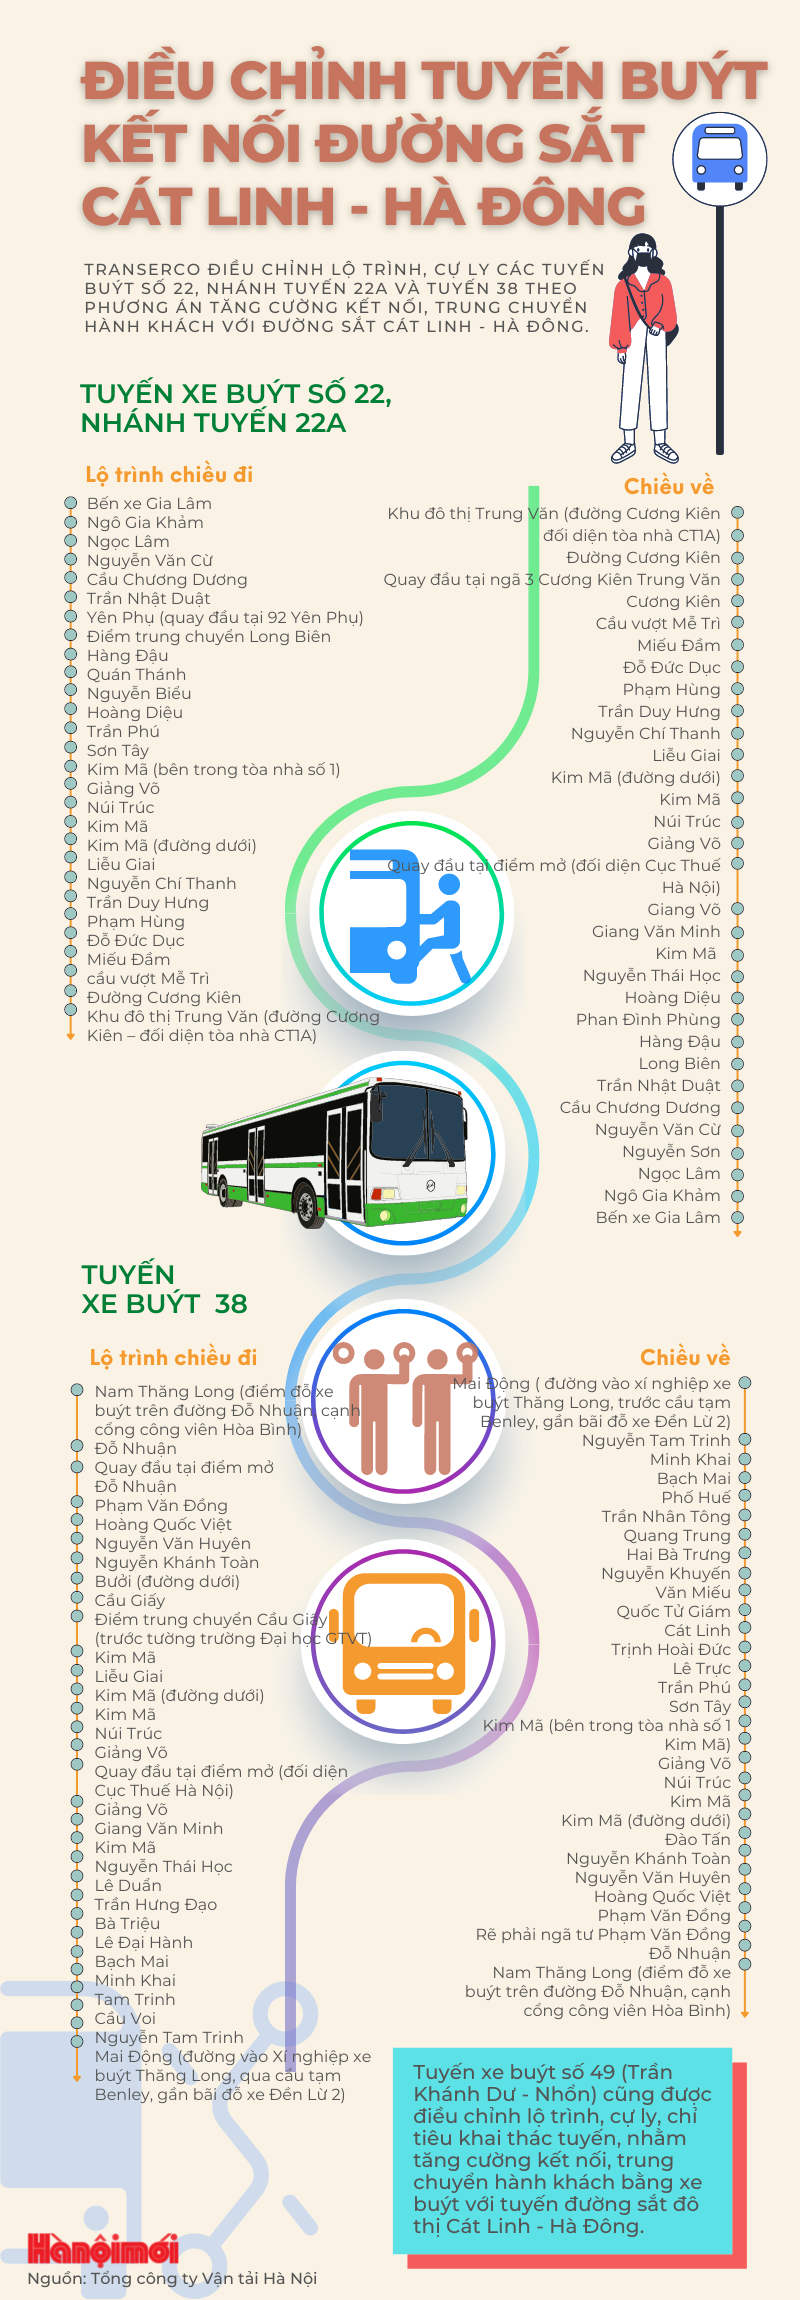 Điều chỉnh lộ trình các tuyến buýt kết nối đường sắt Cát Linh - Hà Đông - Ảnh 1